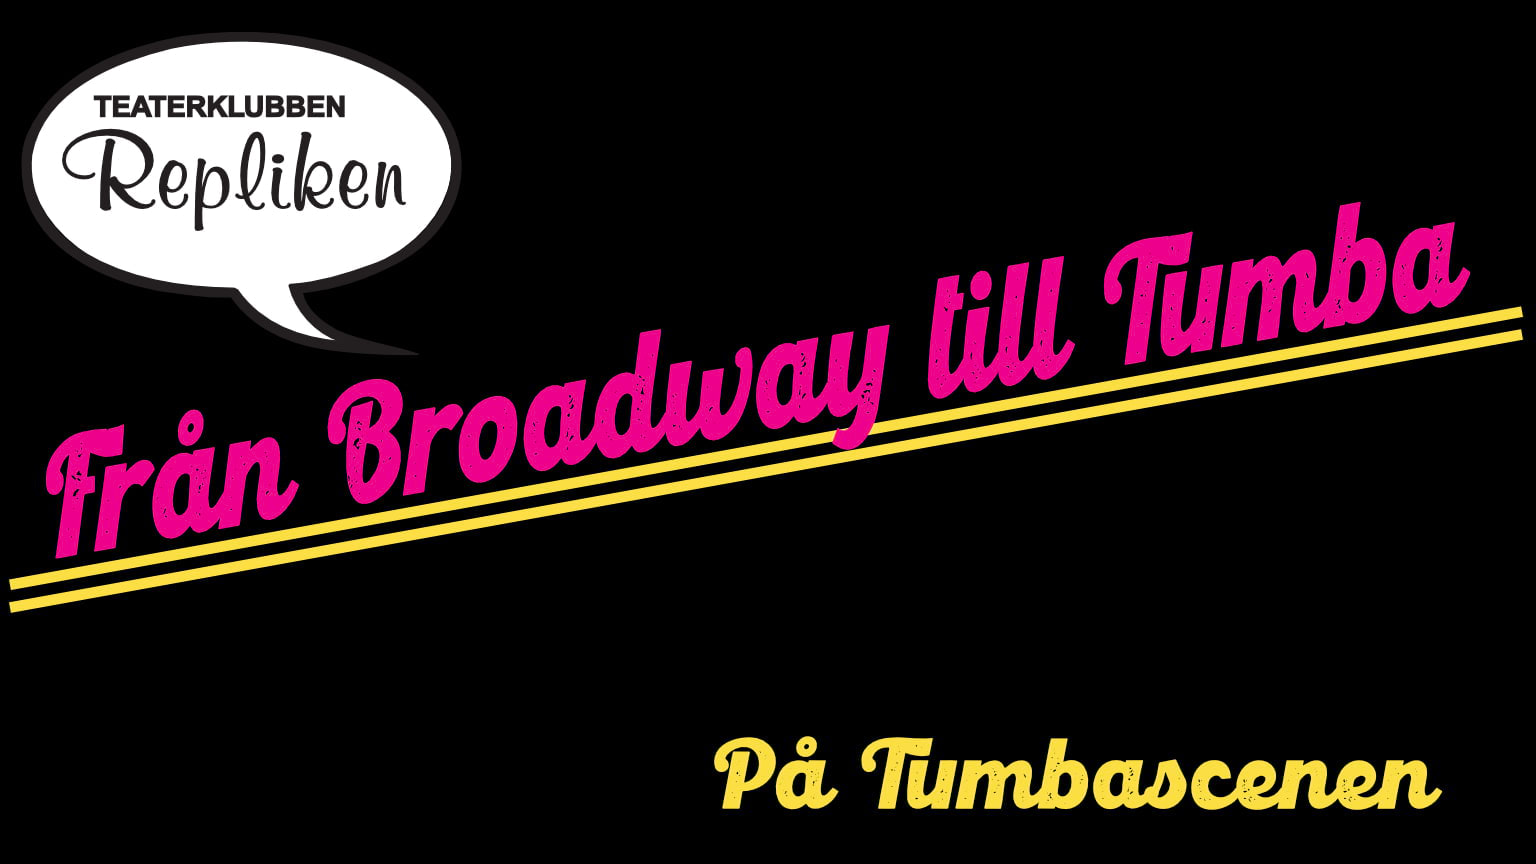 Från Broadway till Tumba